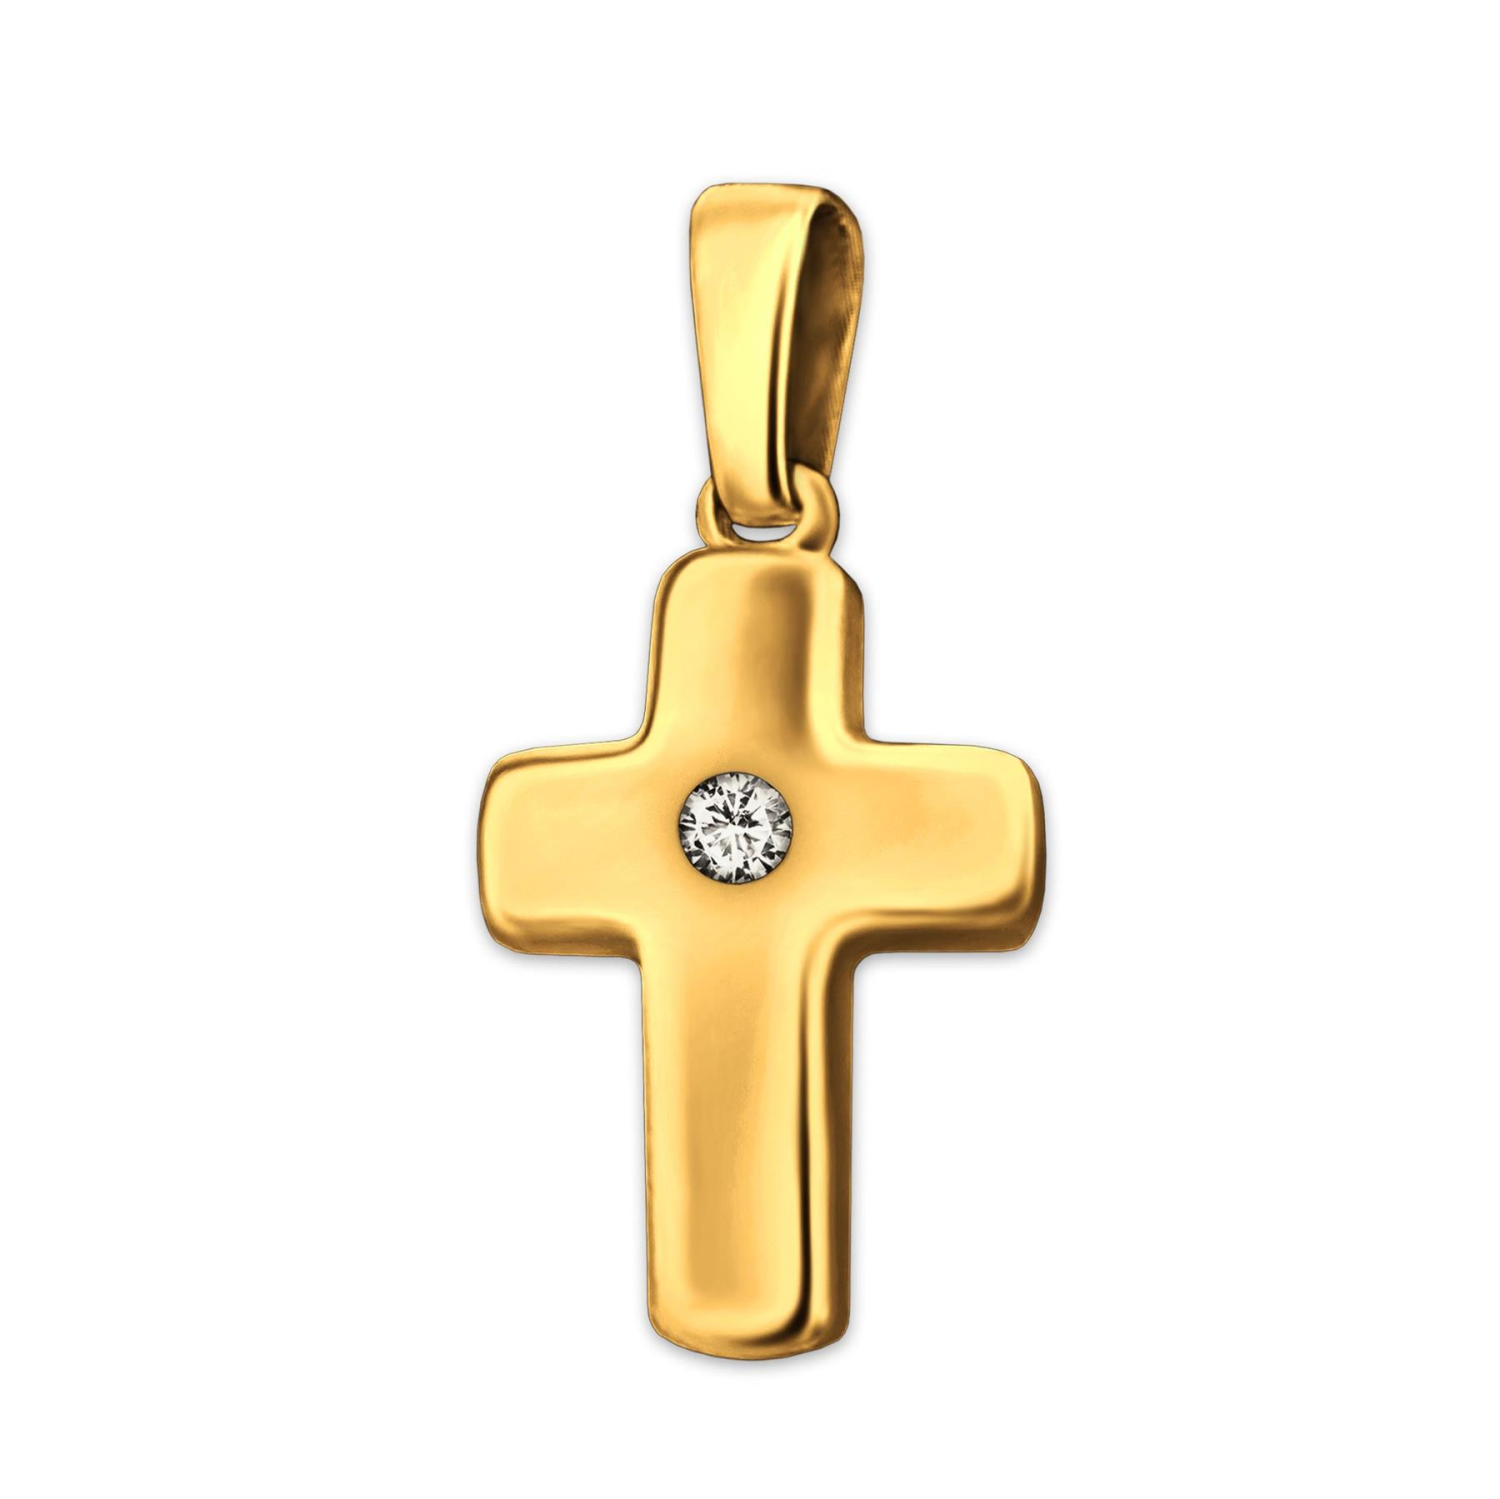 Goldenes Kreuz 12 mm glänzend poliert leicht gewölbt mit Zirkonia 333 Gold